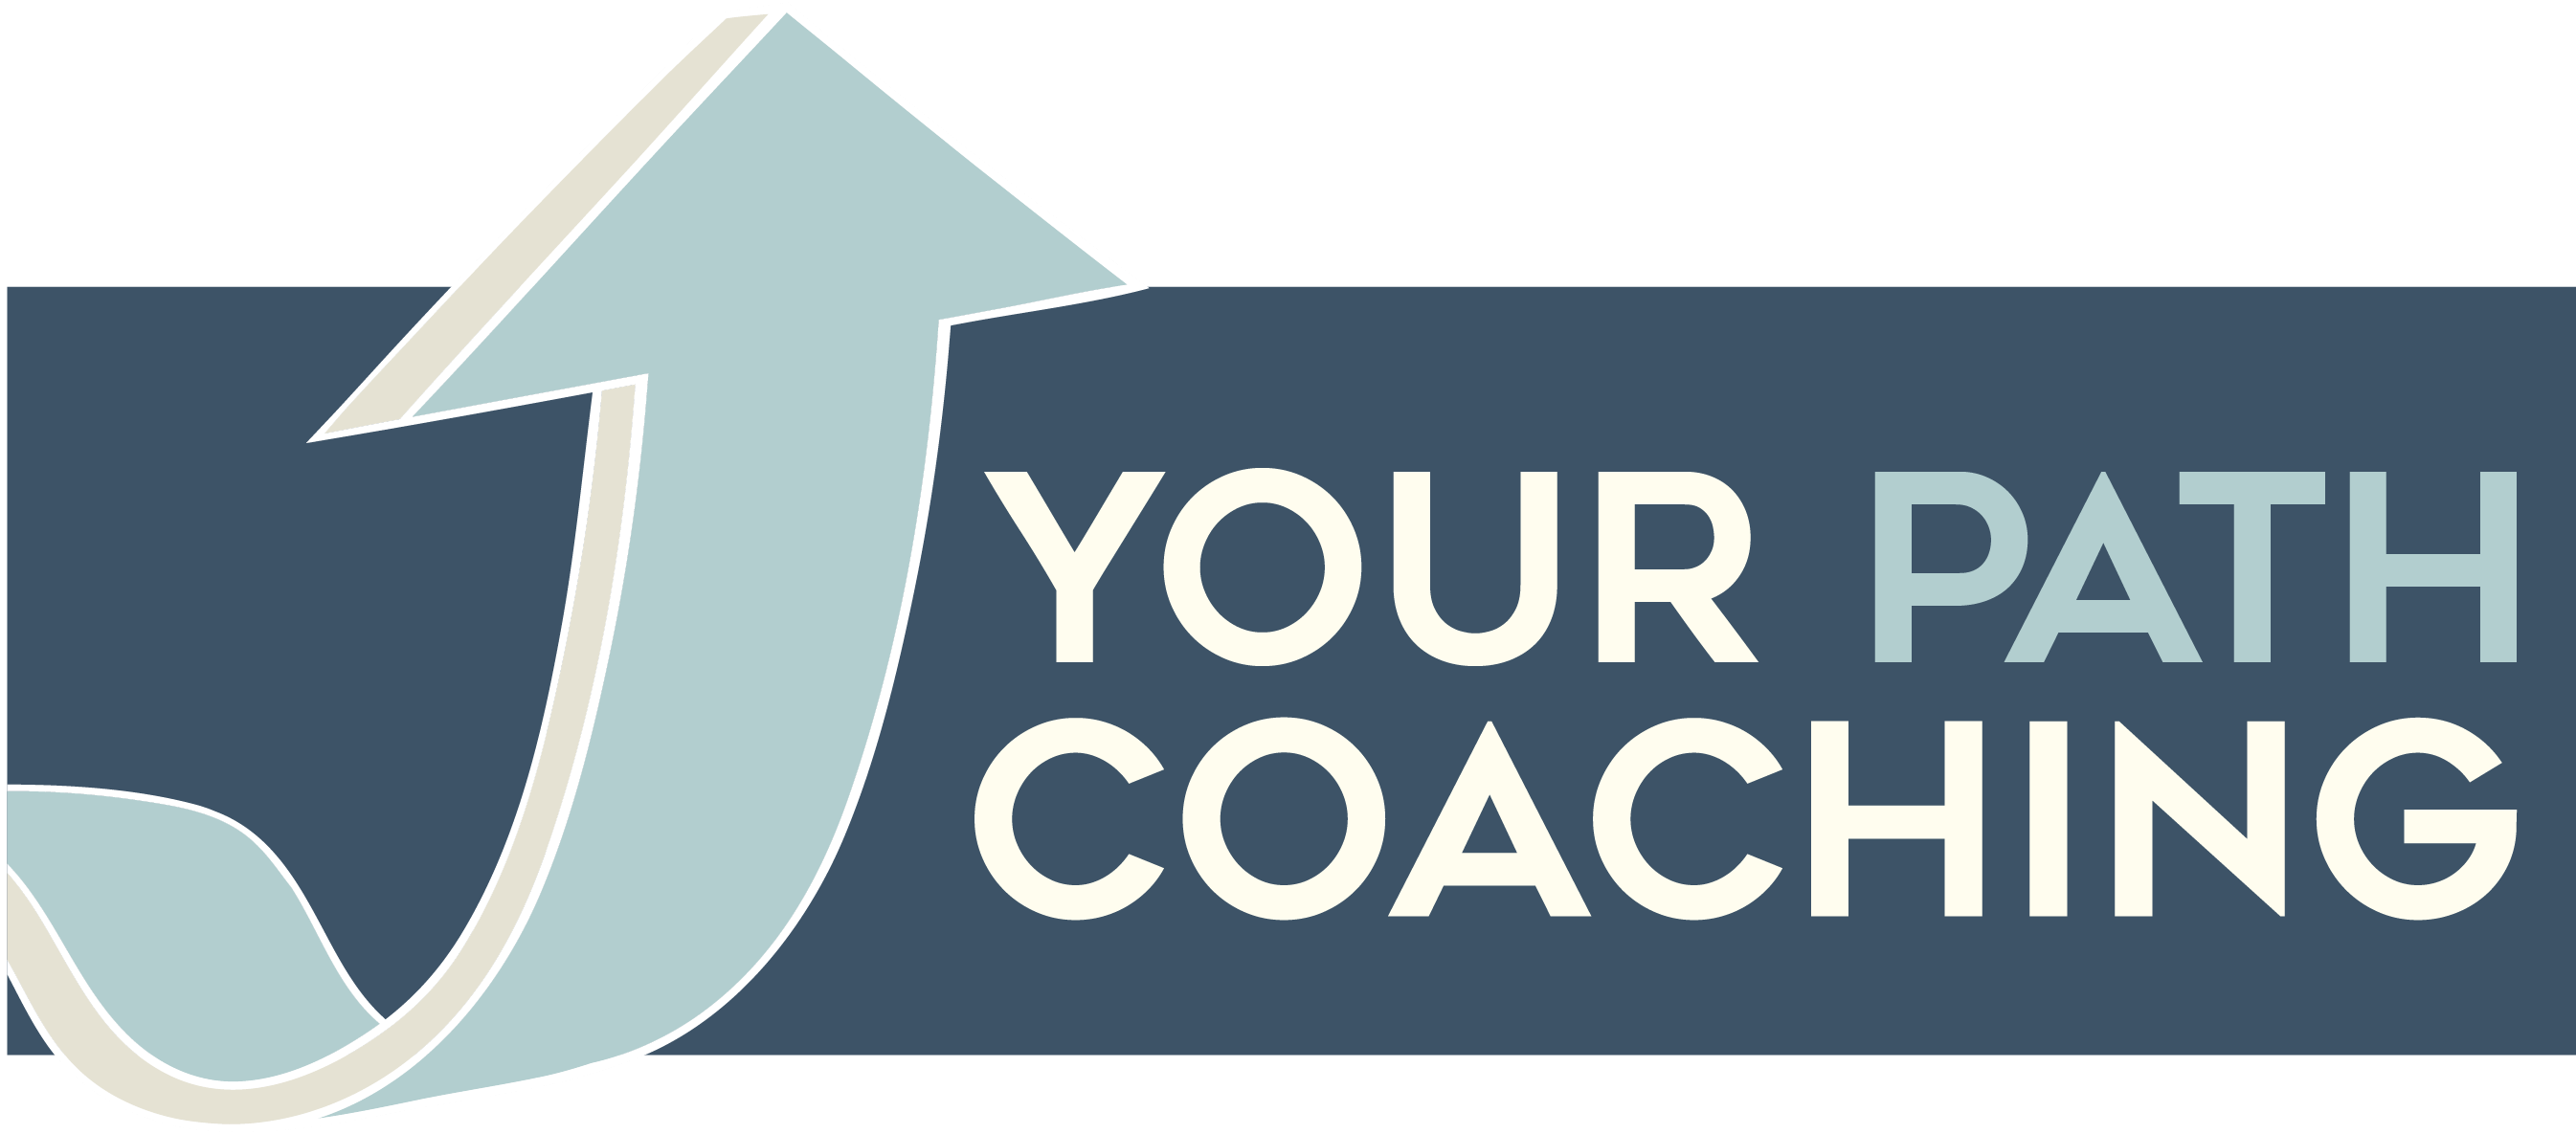 Your Path Coaching logo